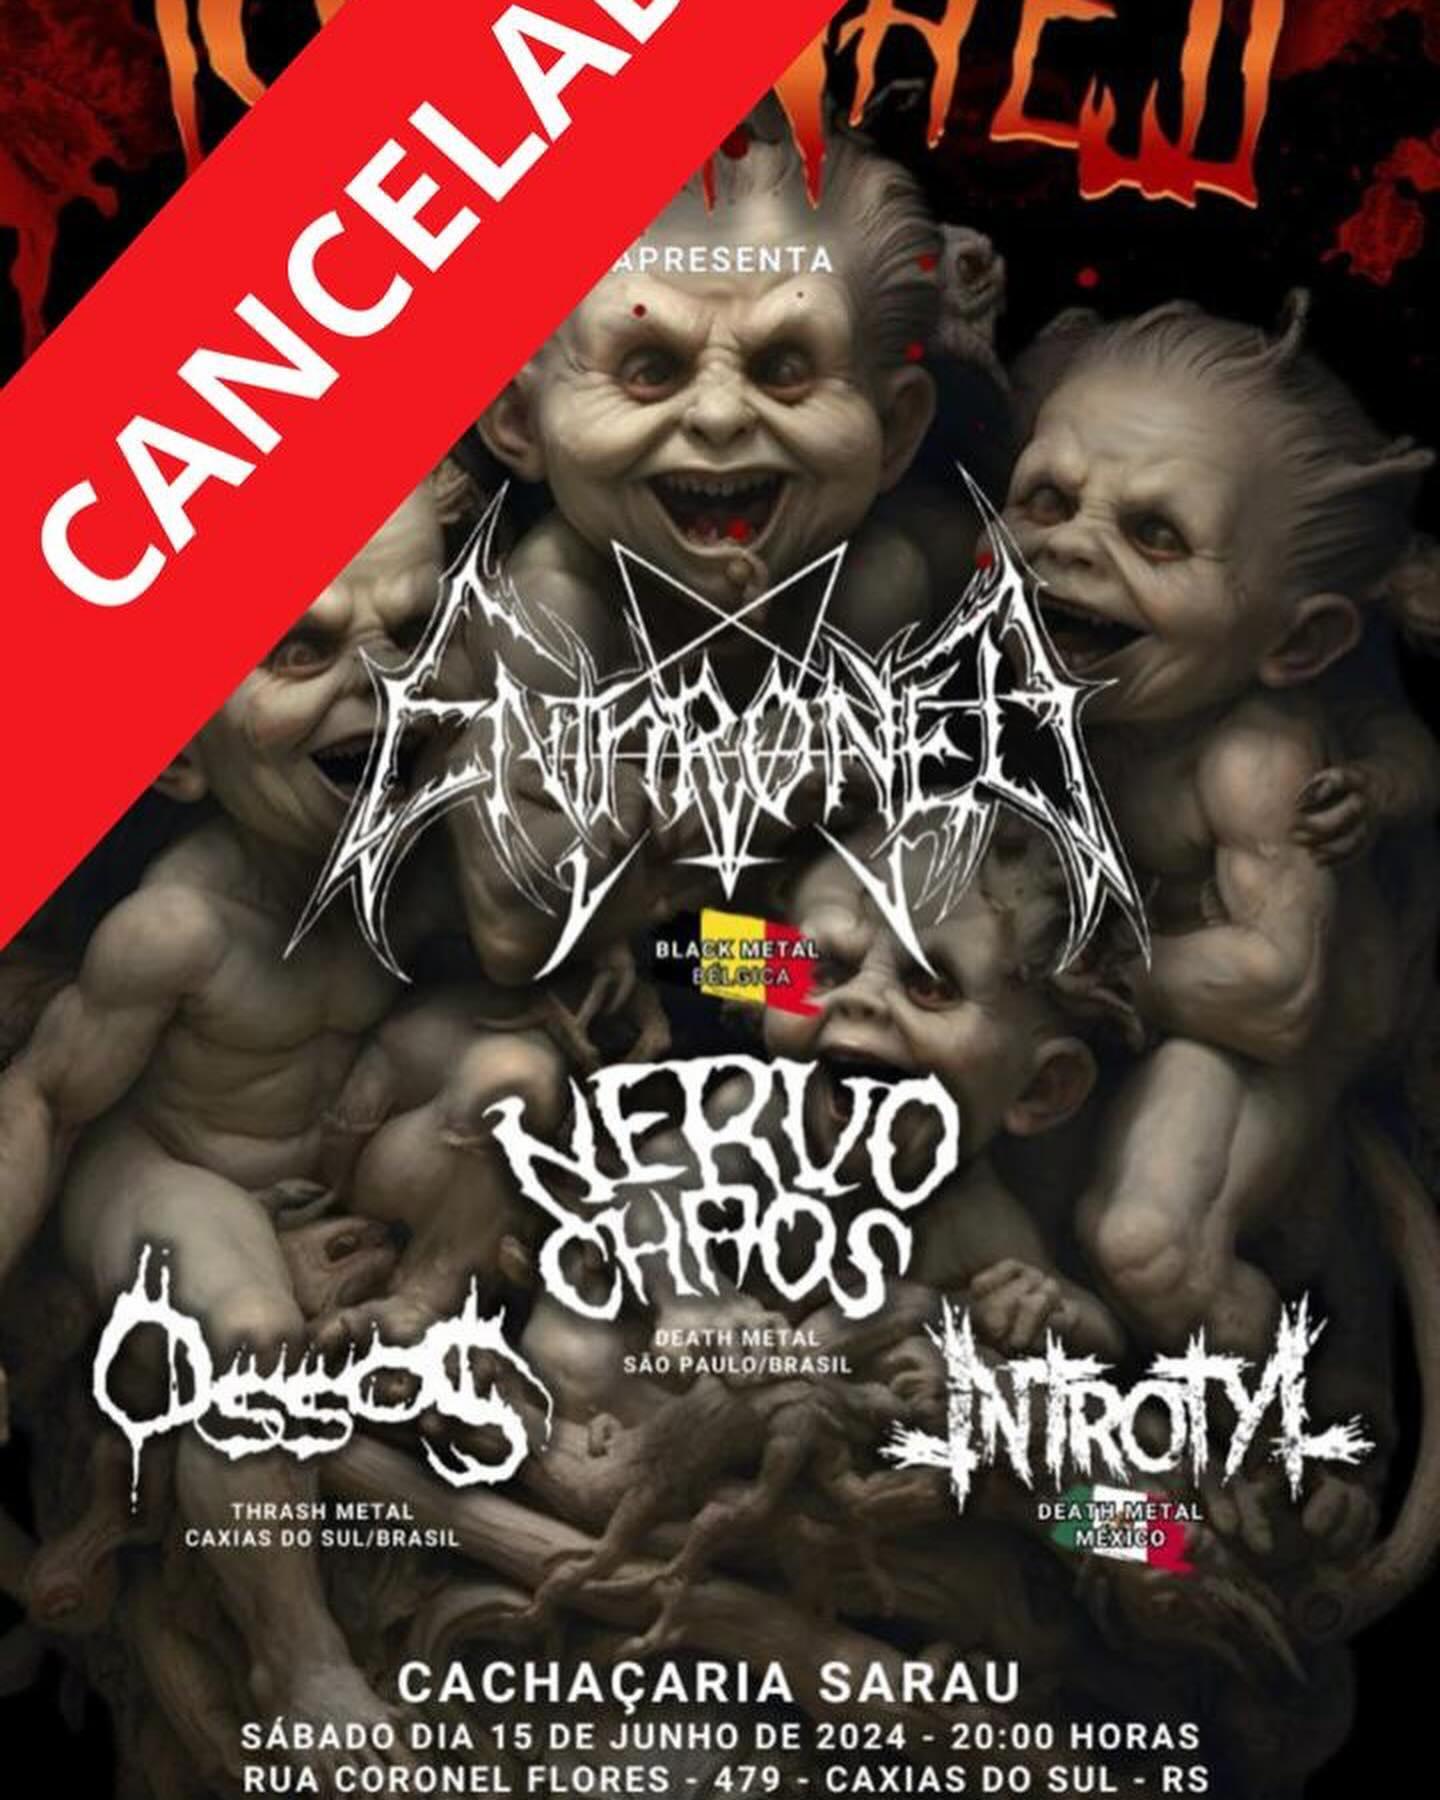 Cancelados todos os shows do Enthroned e Nightfall no Rio Grande do Sul